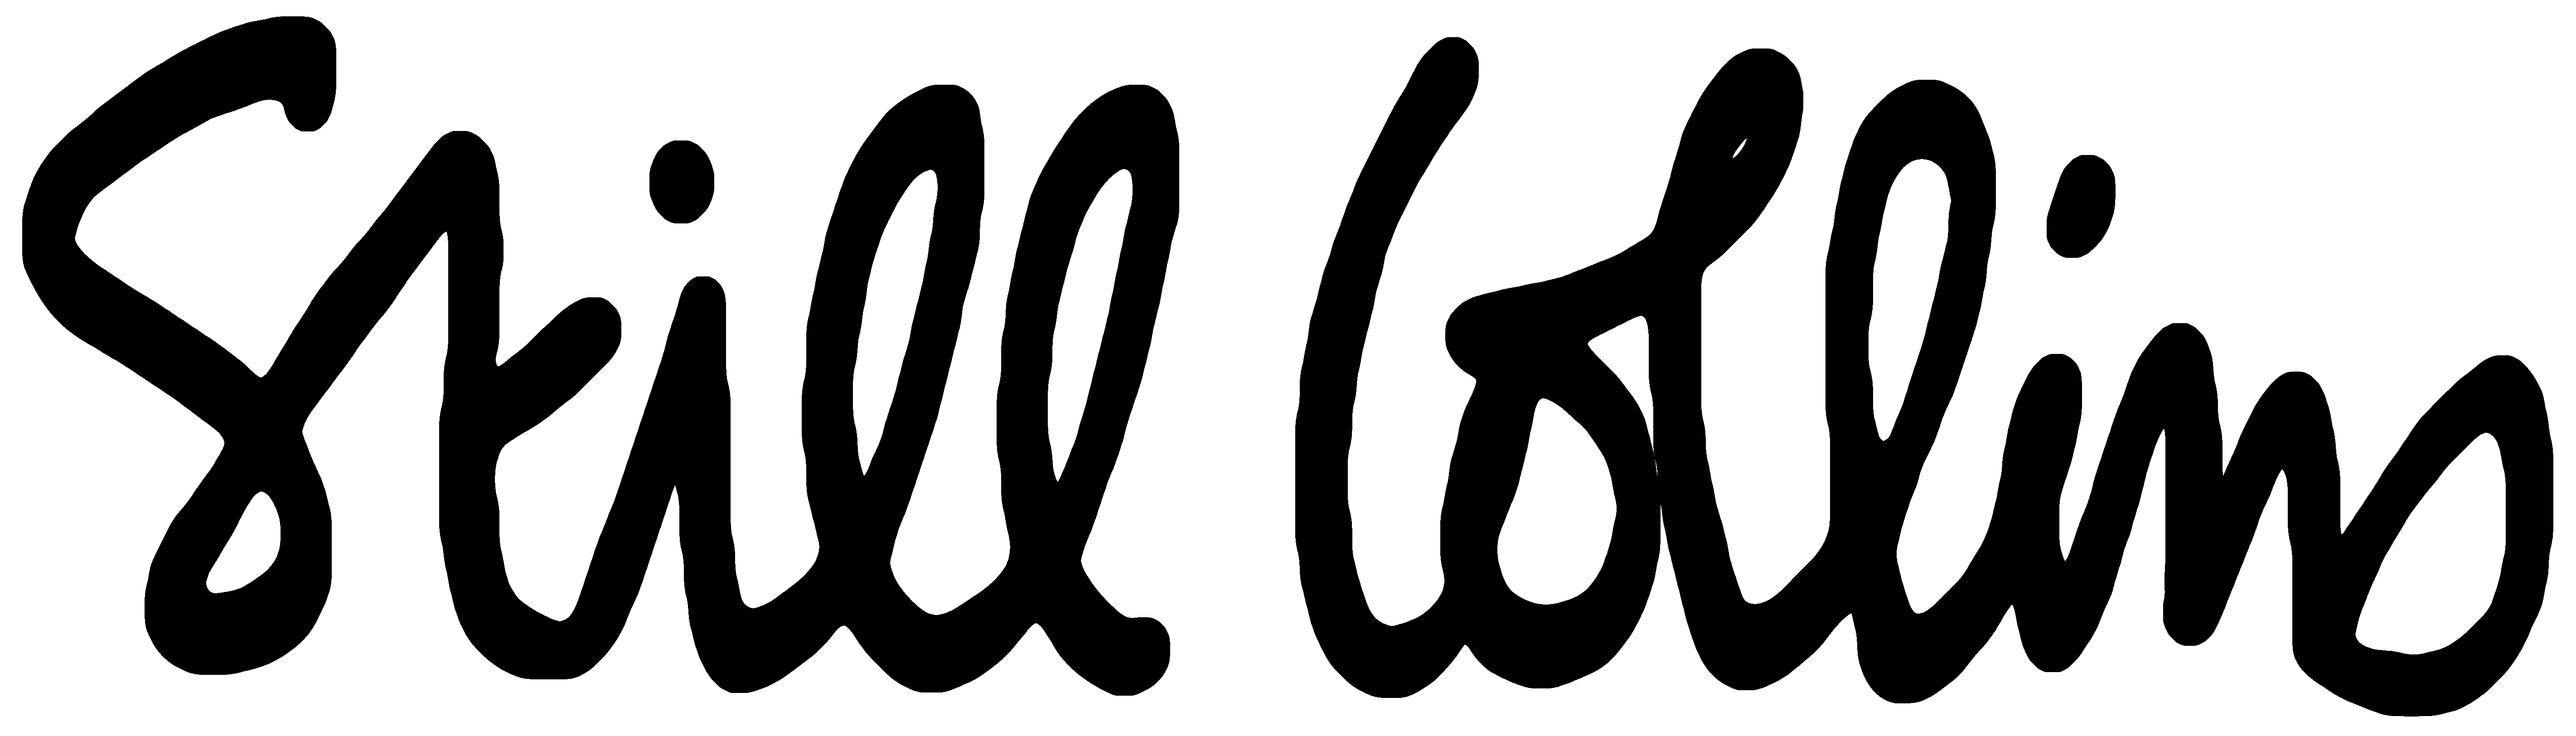 Collins Logo - File:Still collins logo.gif - Wikimedia Commons